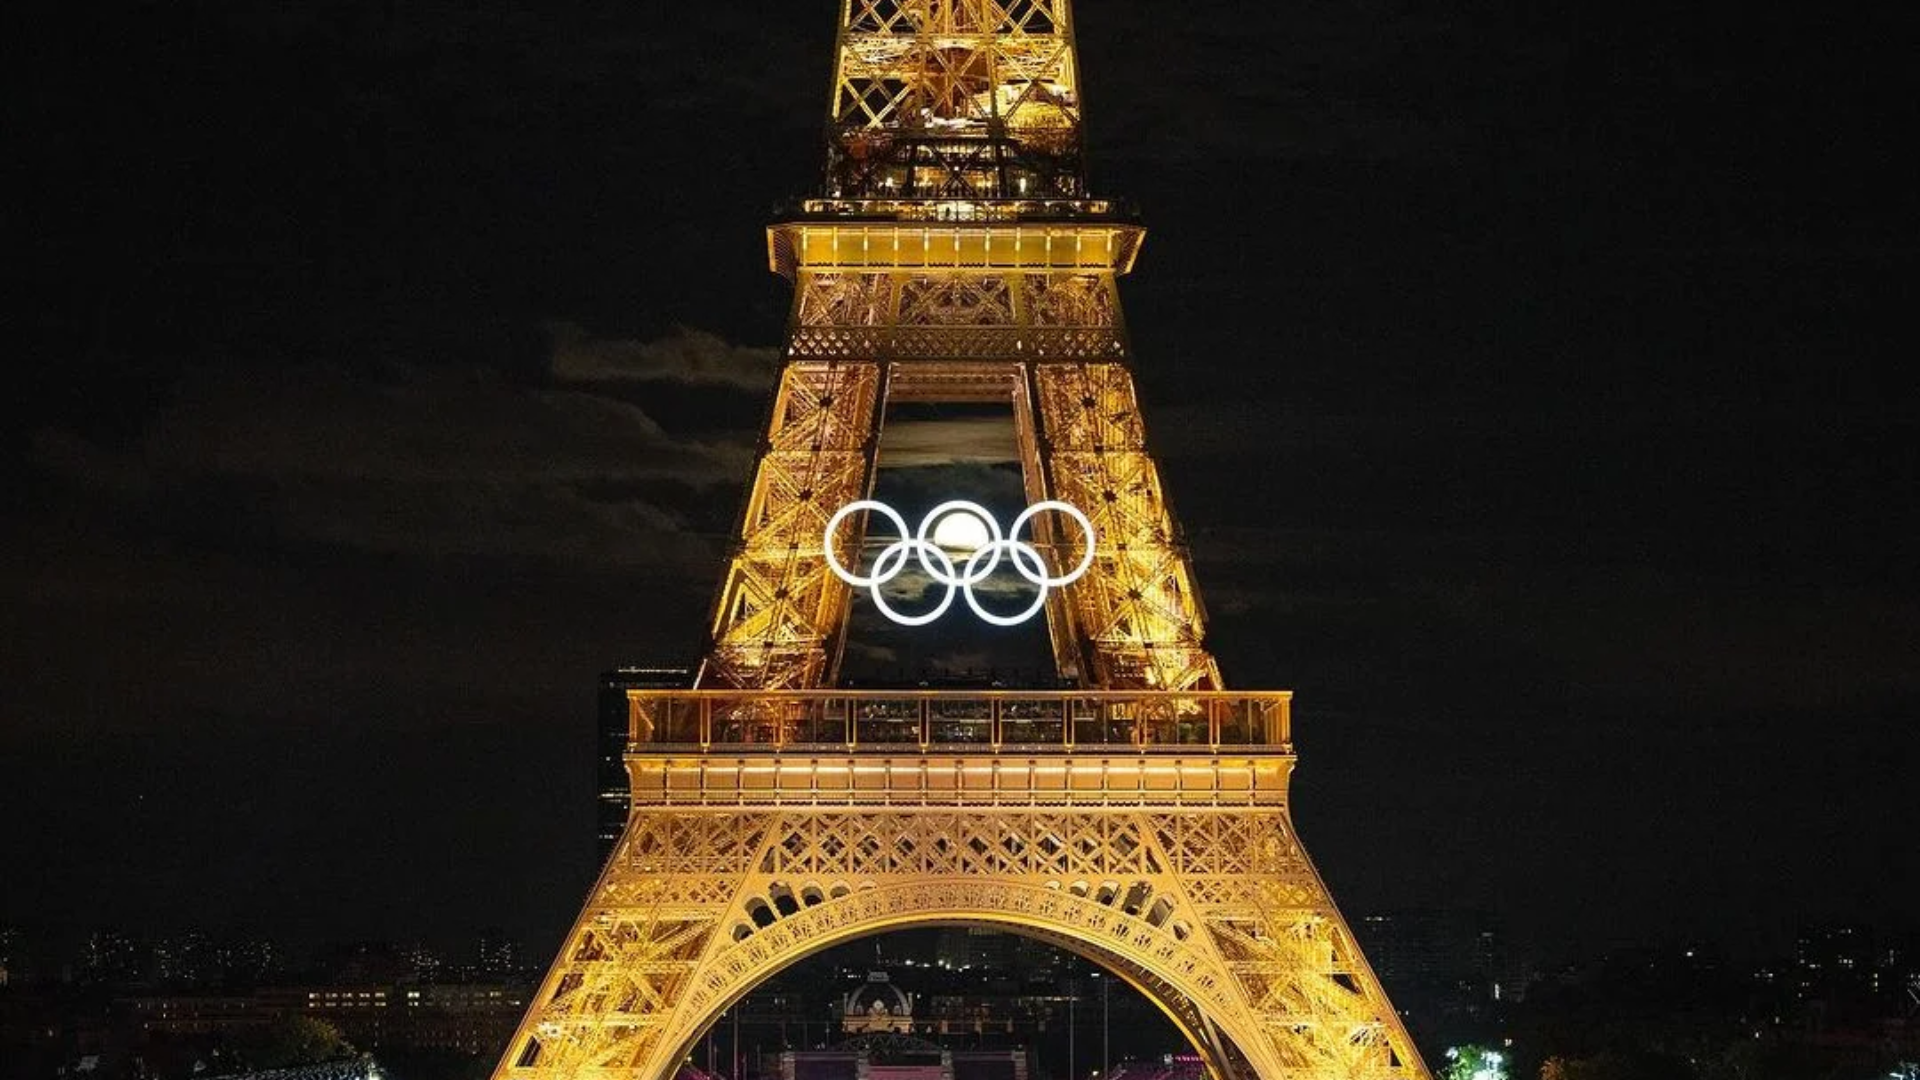 La luna se alinea perfectamente con anillos olímpicos en la Torre Eiffel